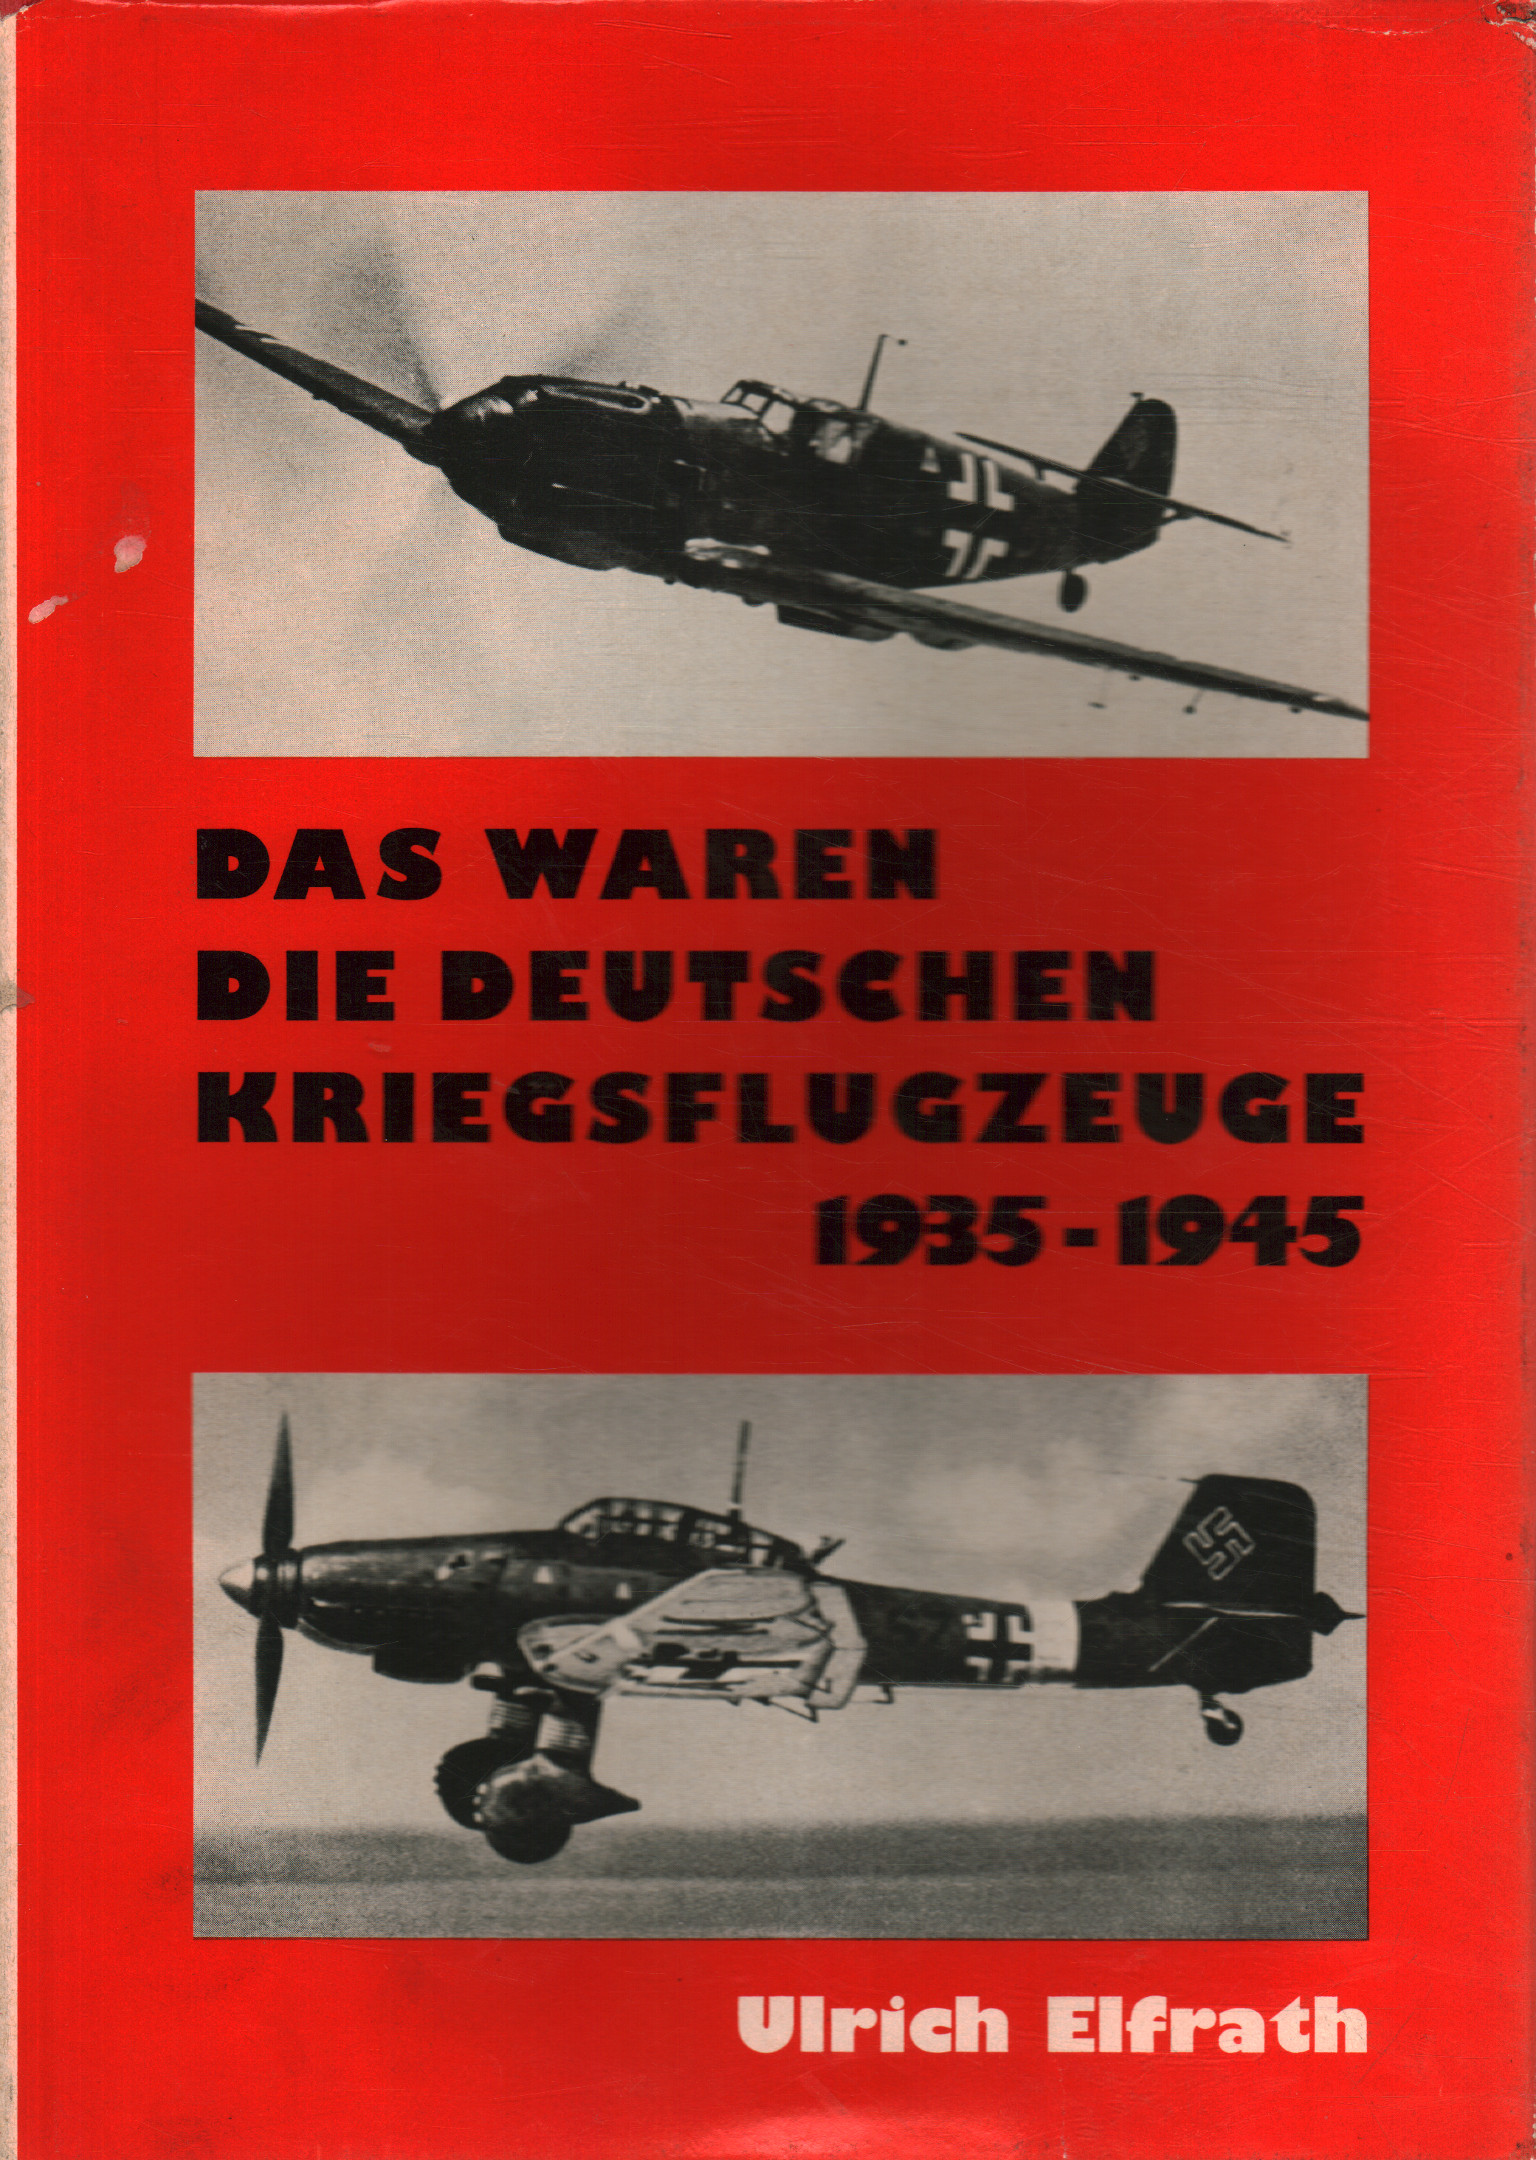 Das waren die deutschen Kriegsflugzeuge 1935-1945, Ulrich Elfrath